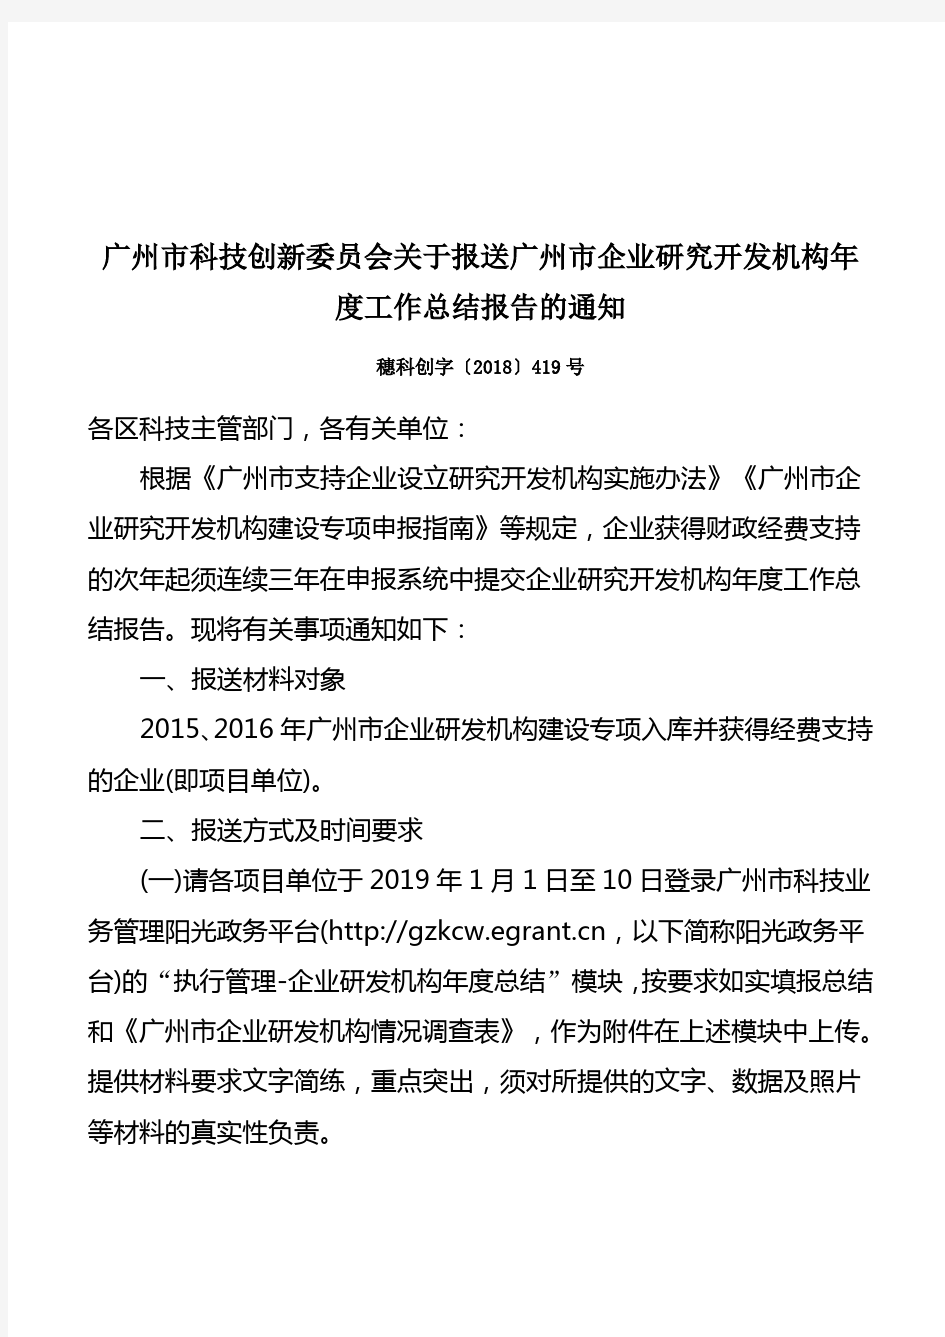 广州市科技创新委员会关于报送广州市企业研究开发机构年度